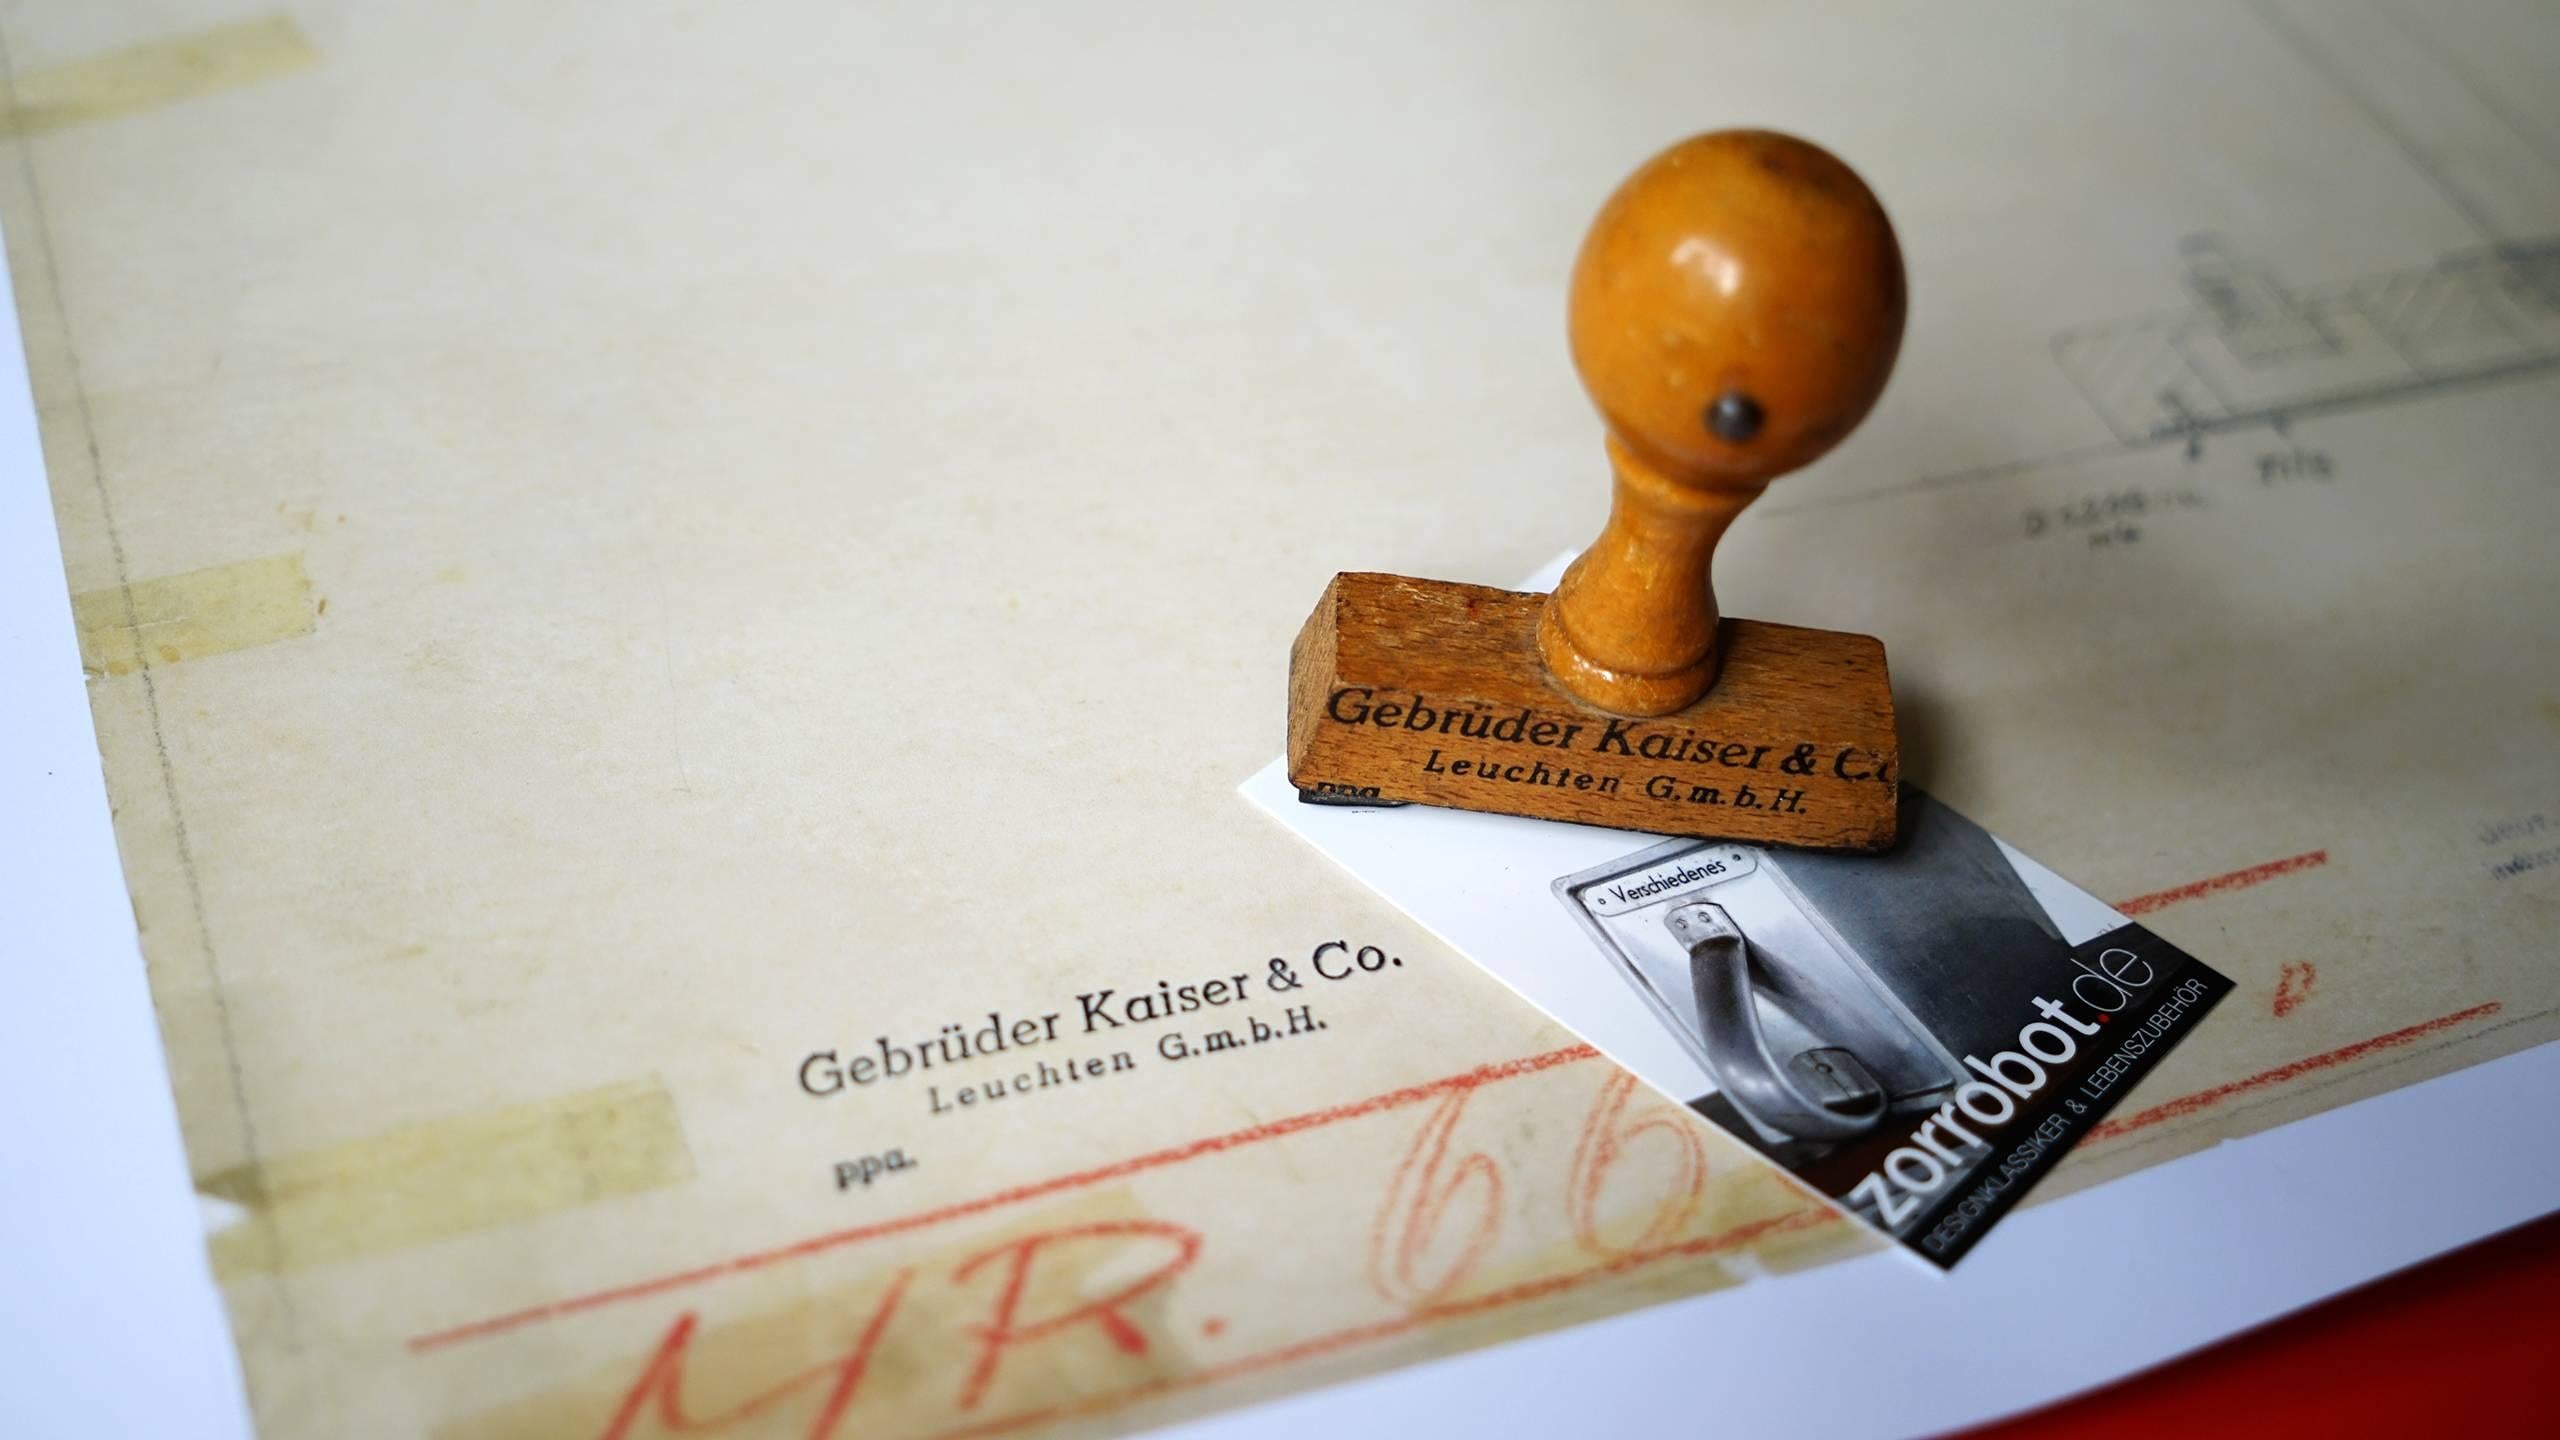 Hochwertiger Druck der Originalzeichnung von Christian Dell für Kaiser Idell und seine berühmte Bauhaus-Lampe.

598mm x 455mm, gestempelt mit original Kaiser Idell 